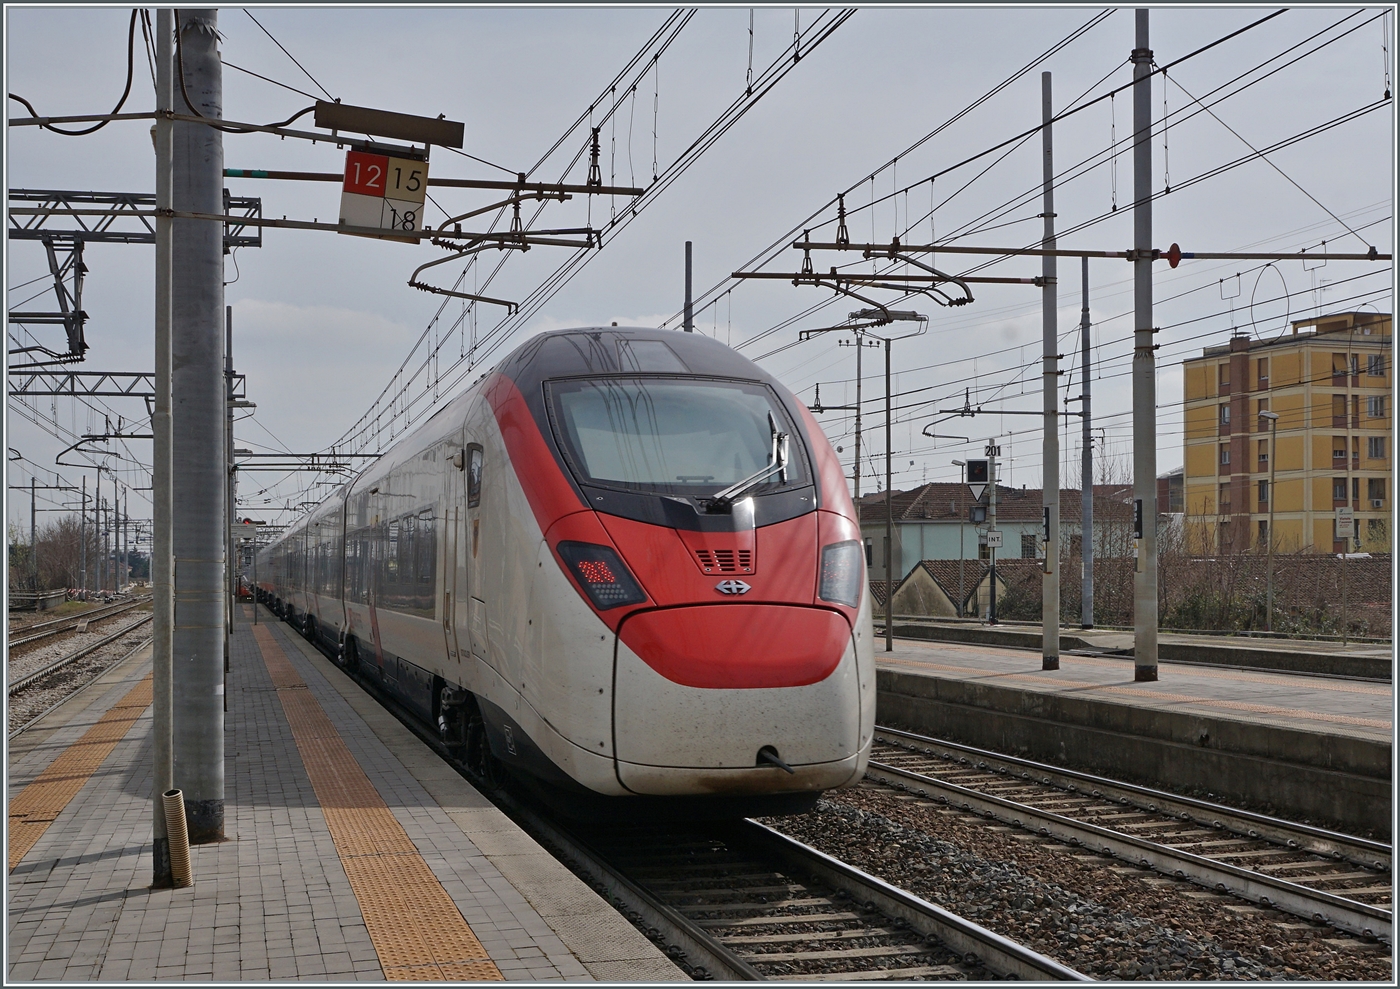 Der SBB Giruno RABe 501 007 URI  ist als EC 307 von Zürich nach Bologna unterwegs verlässt Parma.

13. März 2023